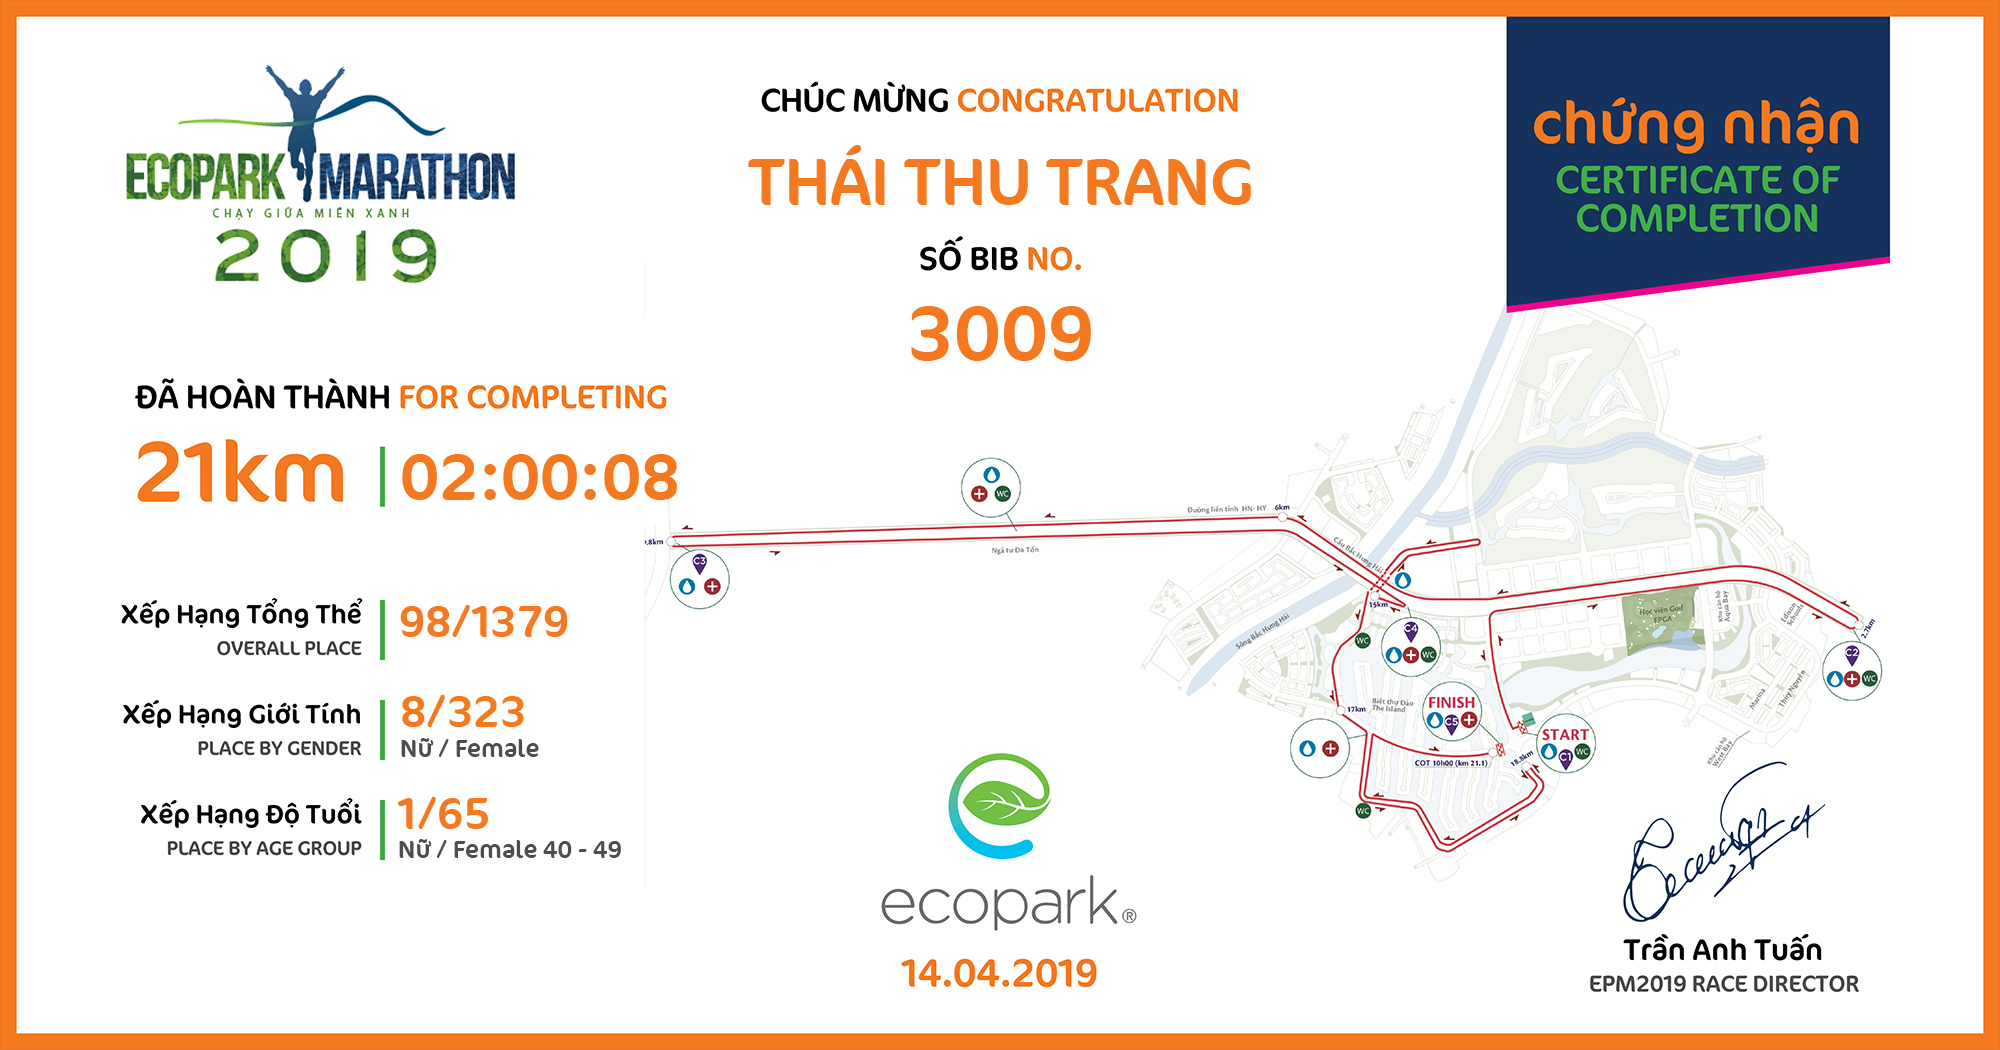 3009 - Thái Thu Trang